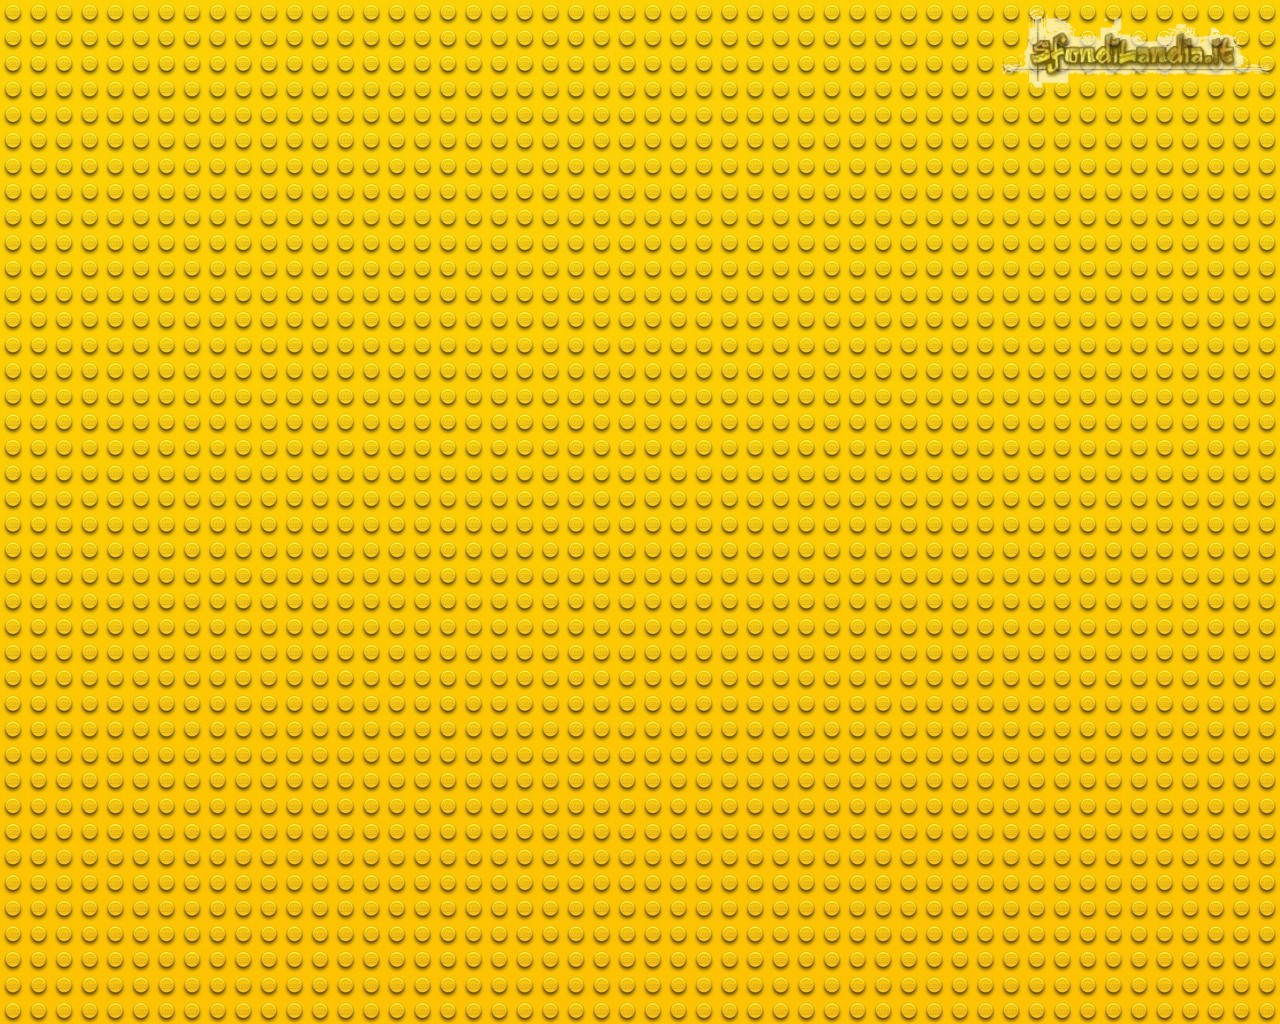 Lego Yellow